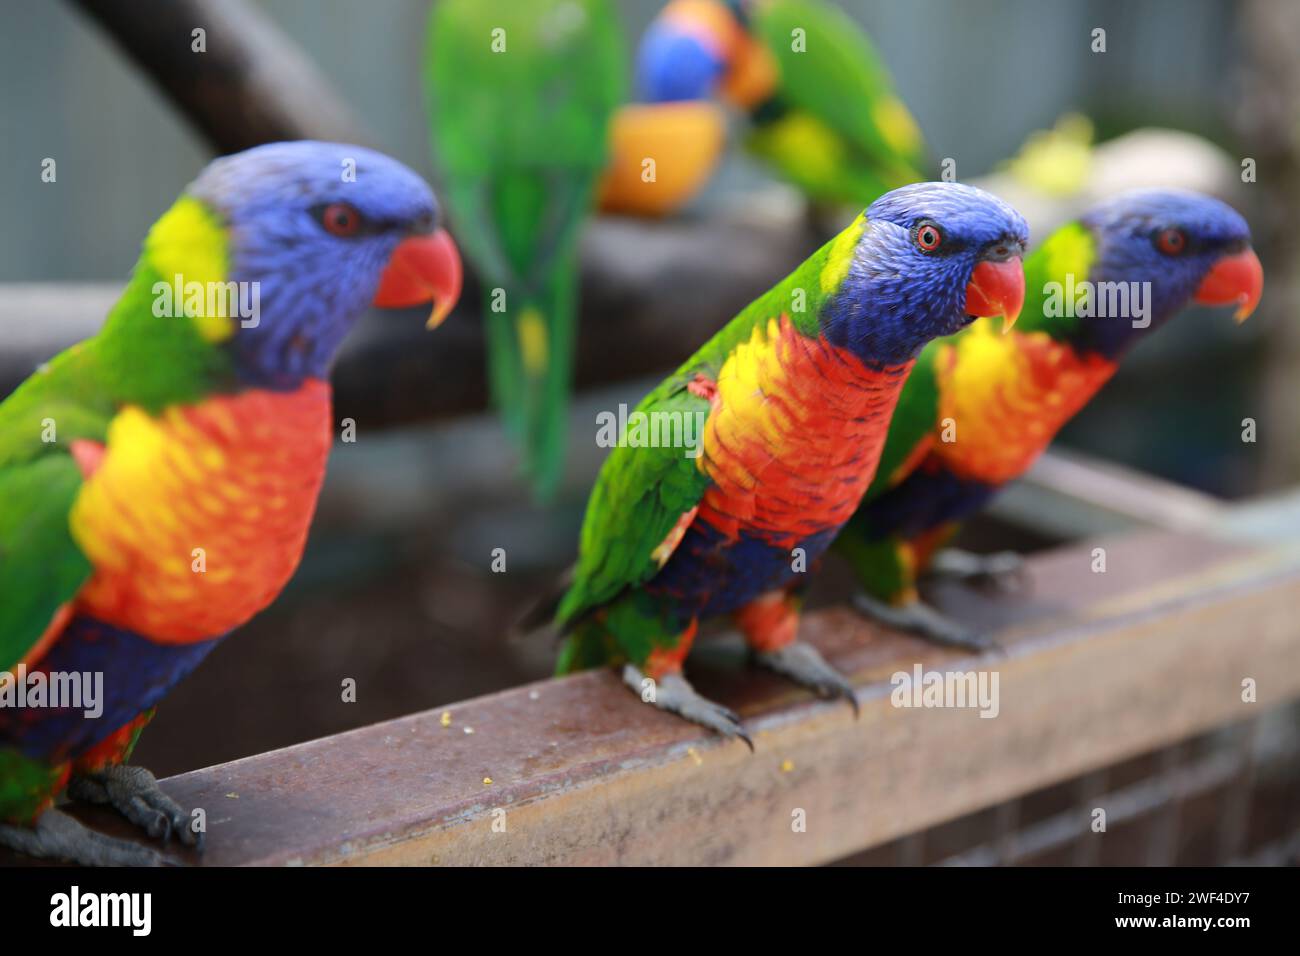 Rainbow Lorikeets, Australia Stock Photo